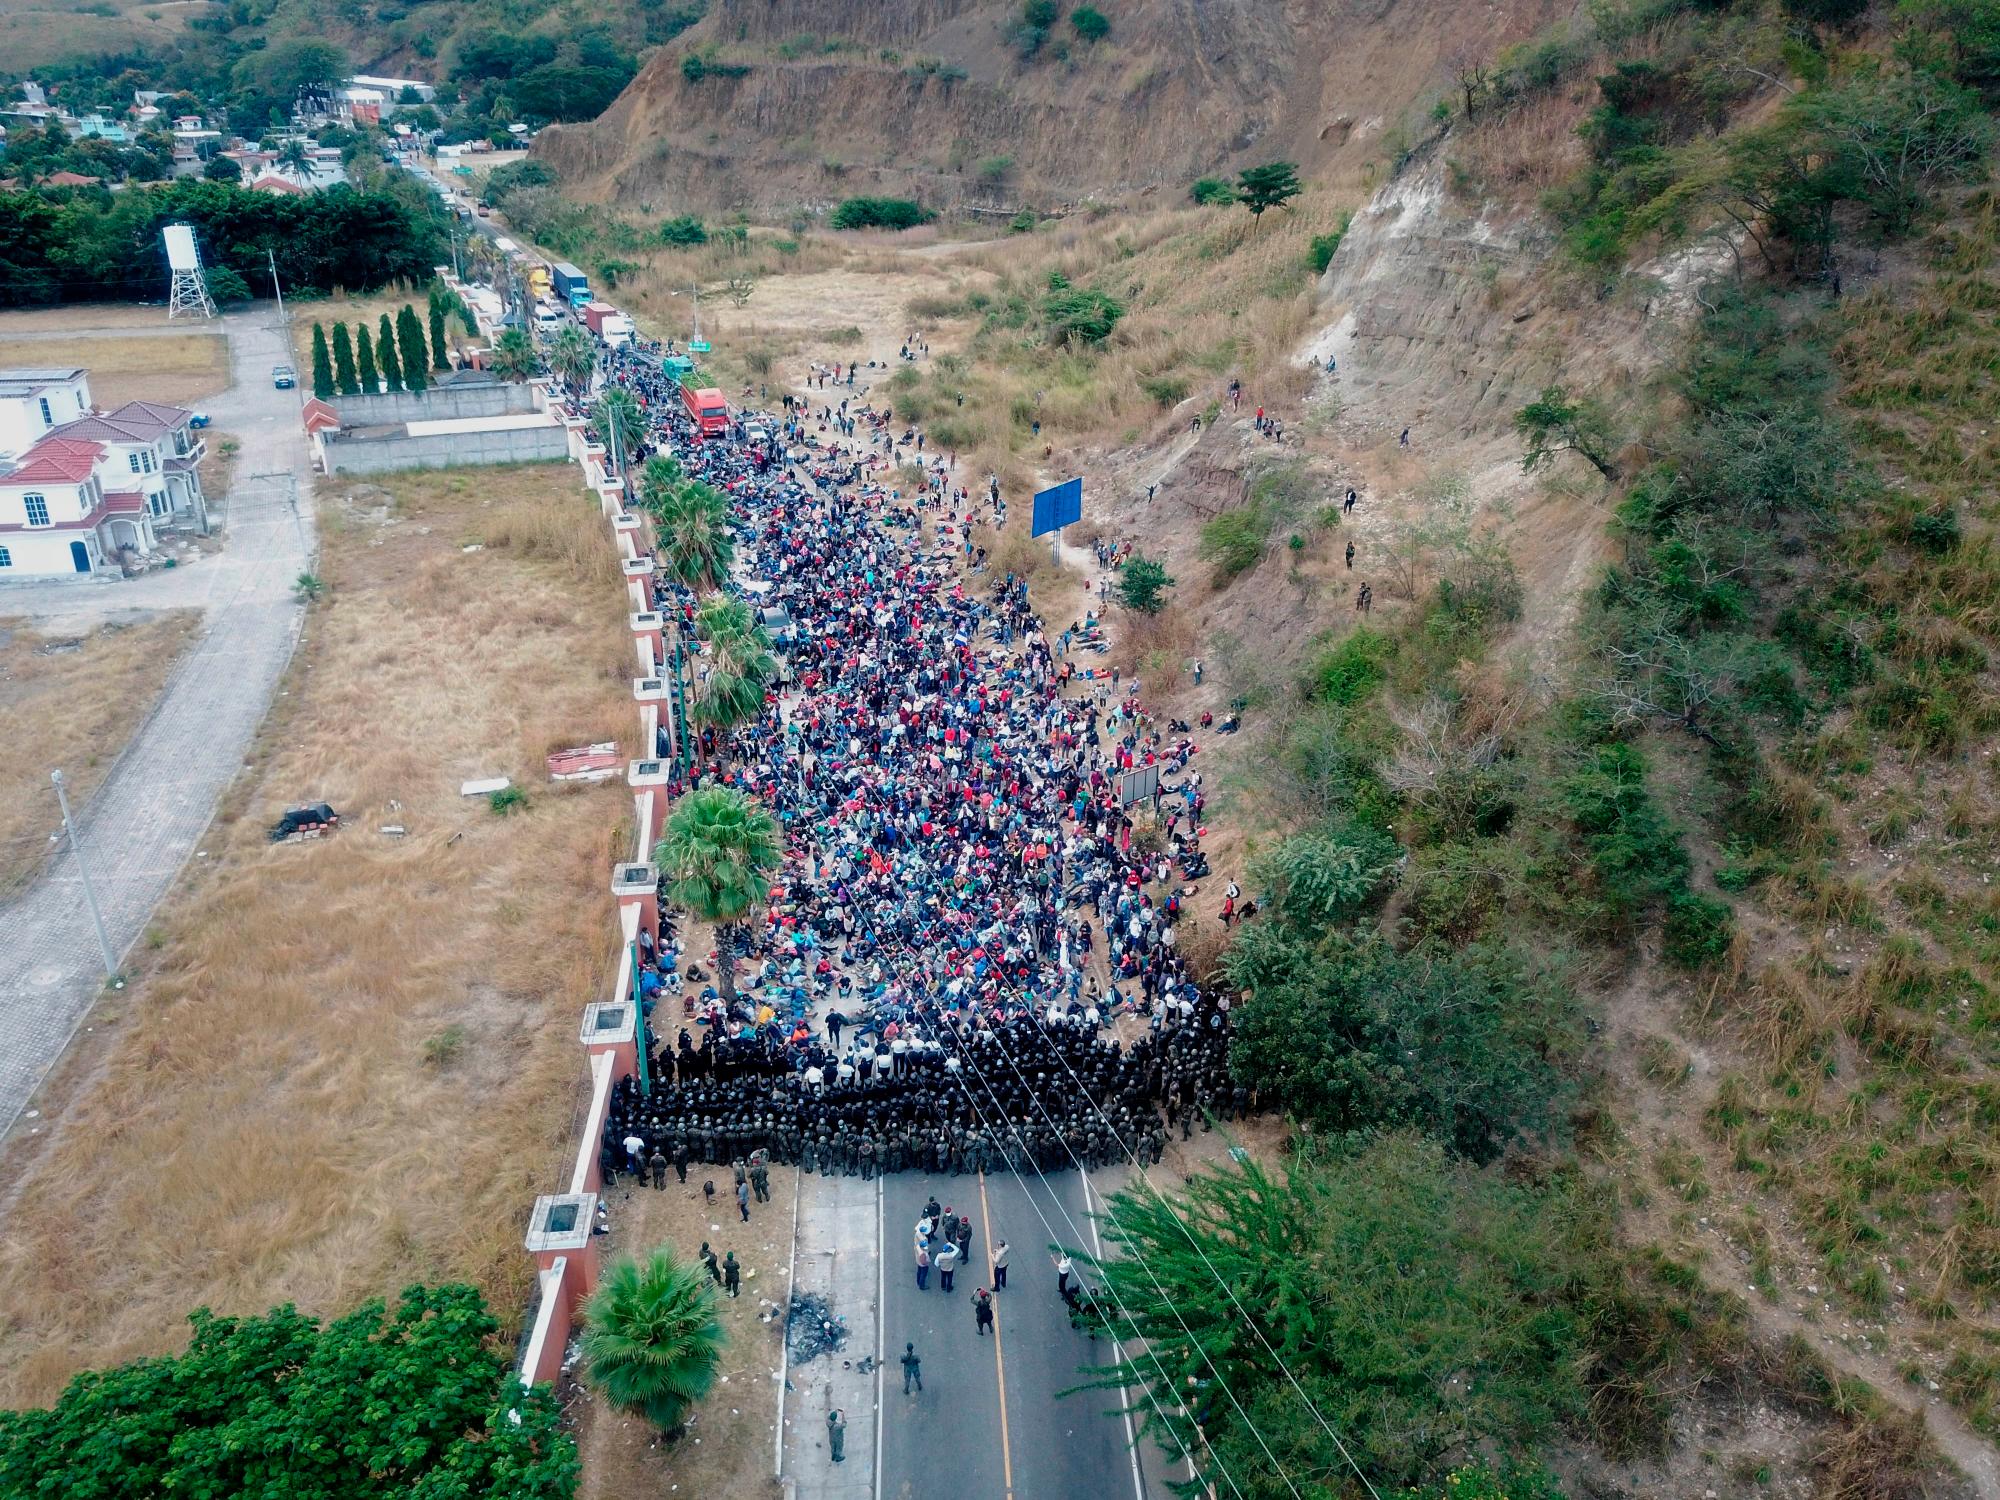 Soldados y policías guatemaltecos forman una barricada humana para detener a los migrantes hondureños que caminan por una carretera hoy, en Chiquimula (Guatemala).